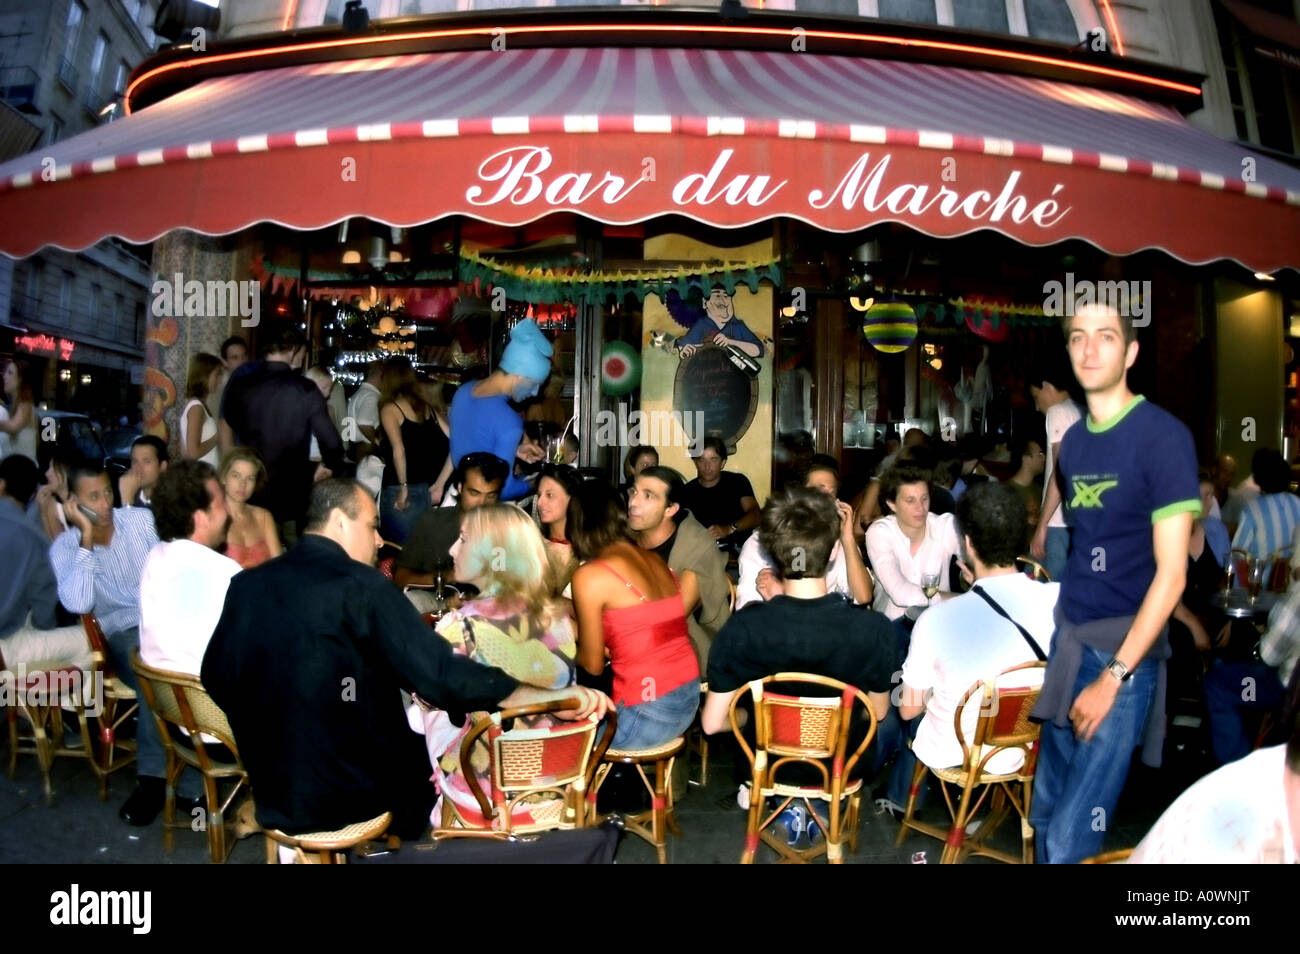 PARIS, France, la foule partage des boissons sur la terrasse du trottoir Paris French café Bar Bistro Restaurant dans le quartier latin « Bar de marché » Banque D'Images